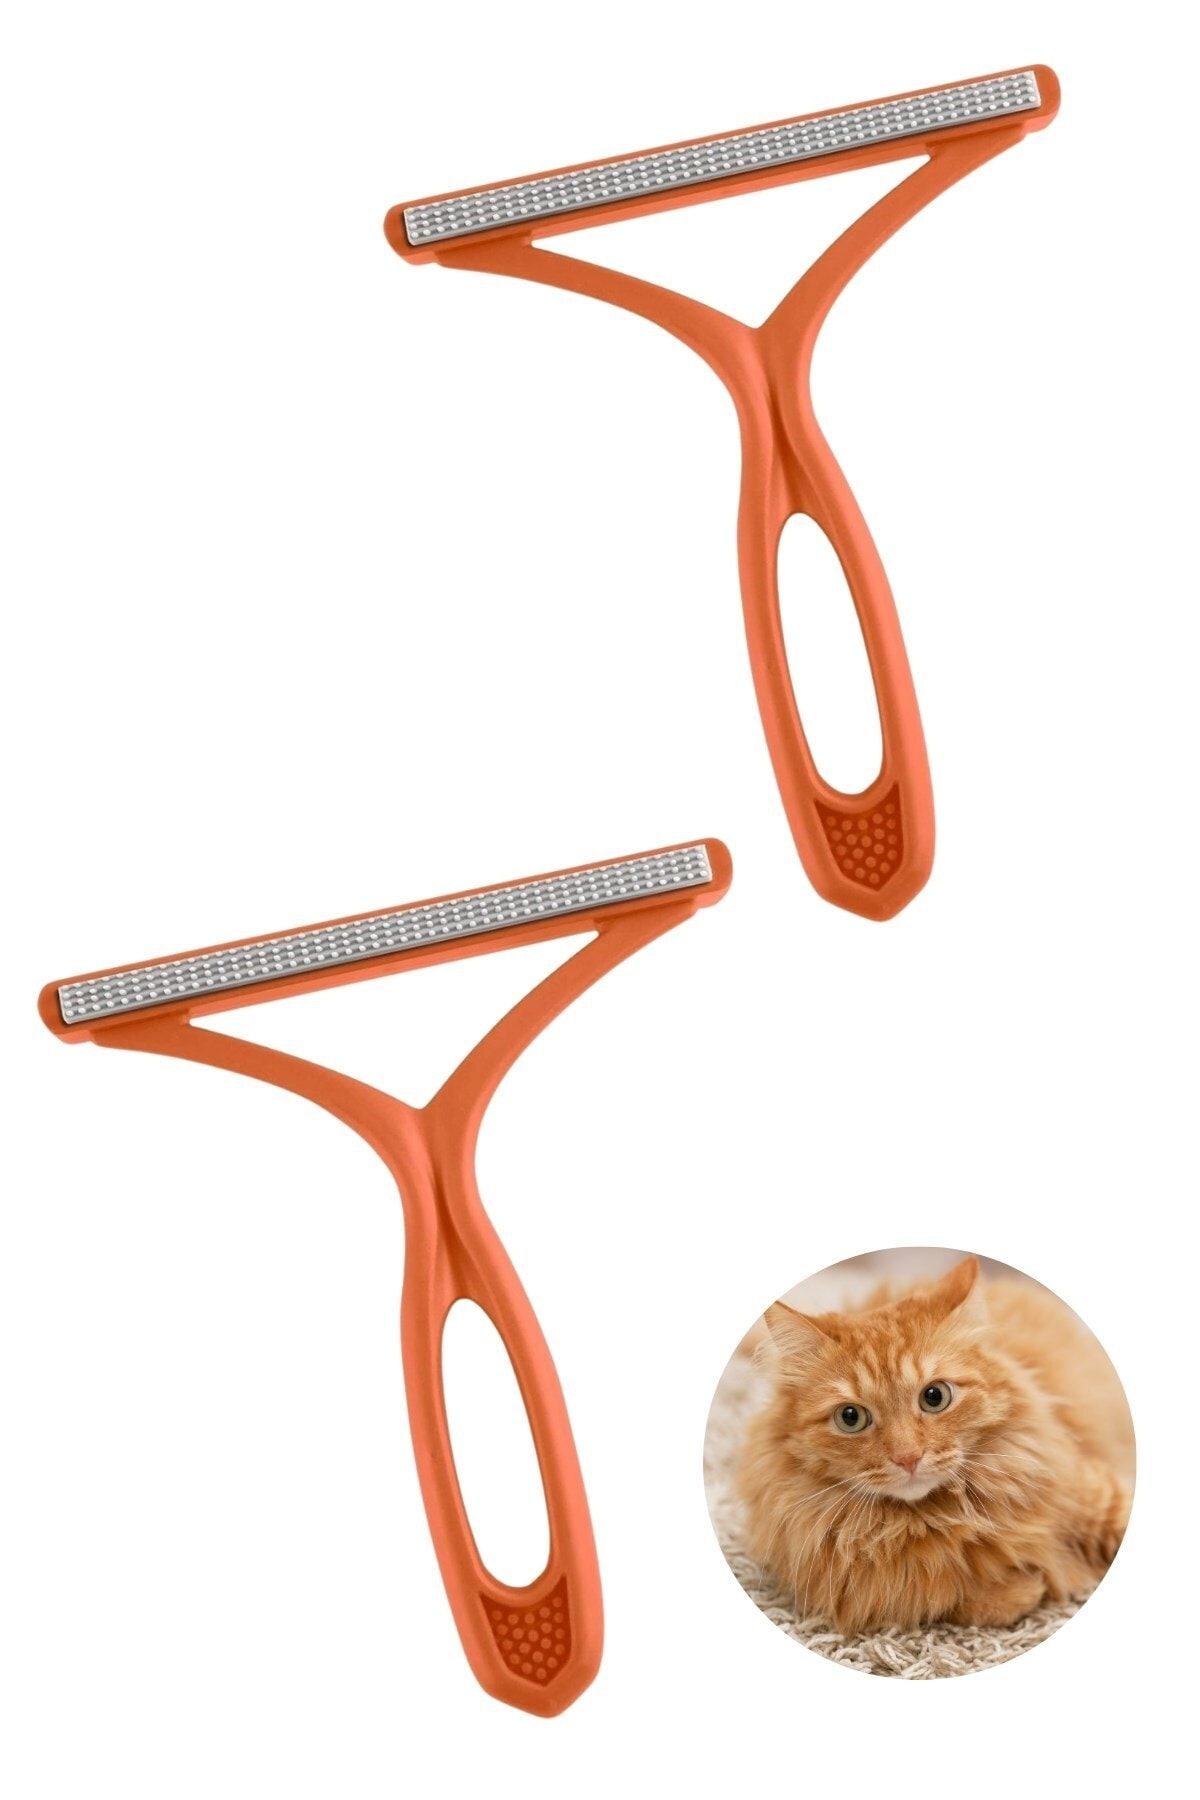 Buffer ® 2 Adet Kedi Köpek Tüy Toplayıcı Çift Taraflı Pamuk Tiftiği Ve Tüy Toplama Fırçası